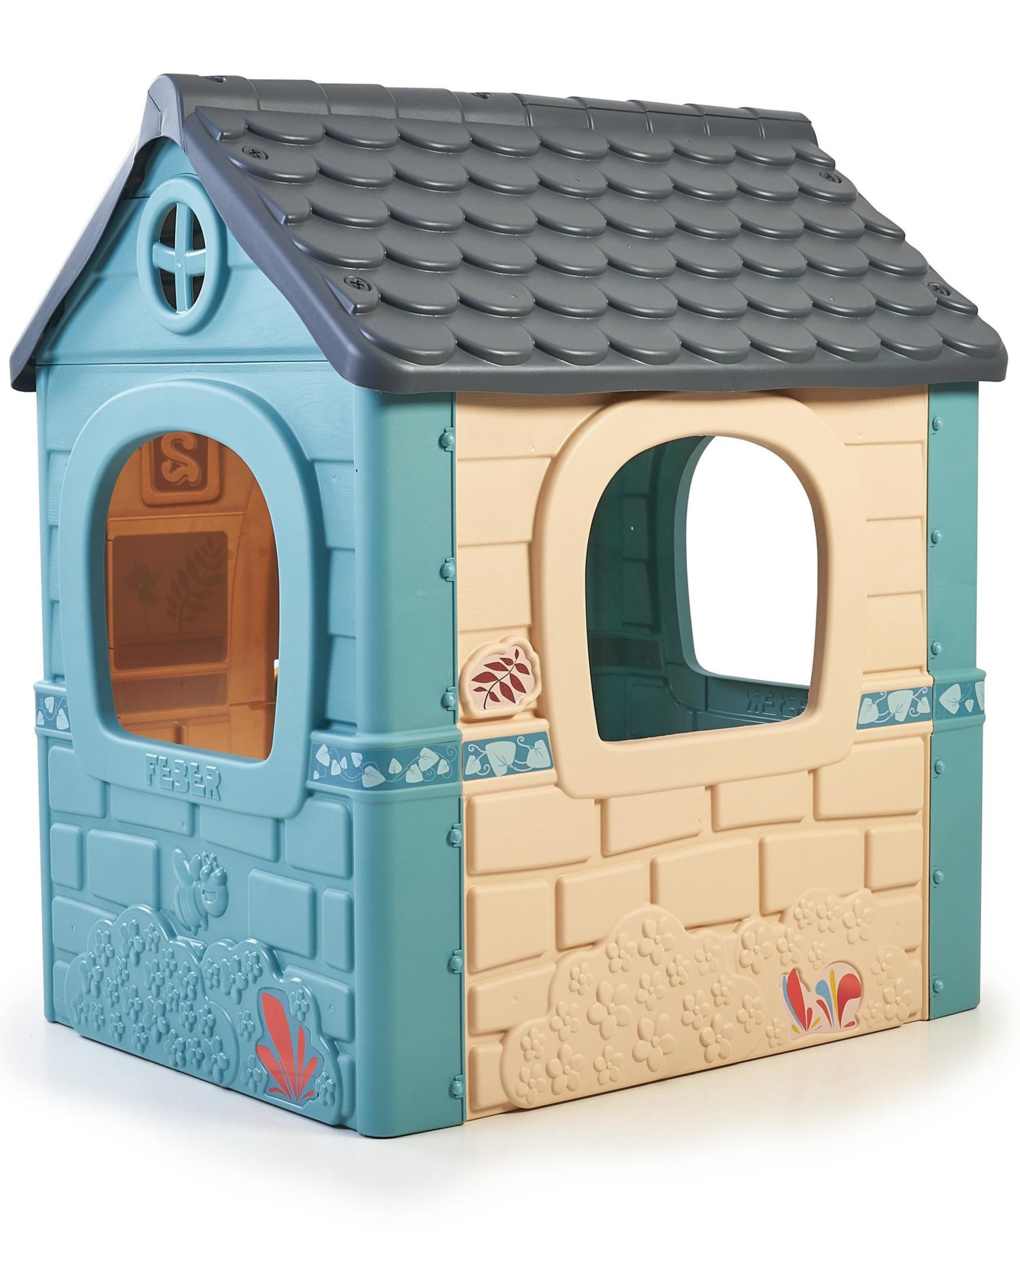 Casa infantil con puerta abatible - colores pastel 2+ - feber - Feber